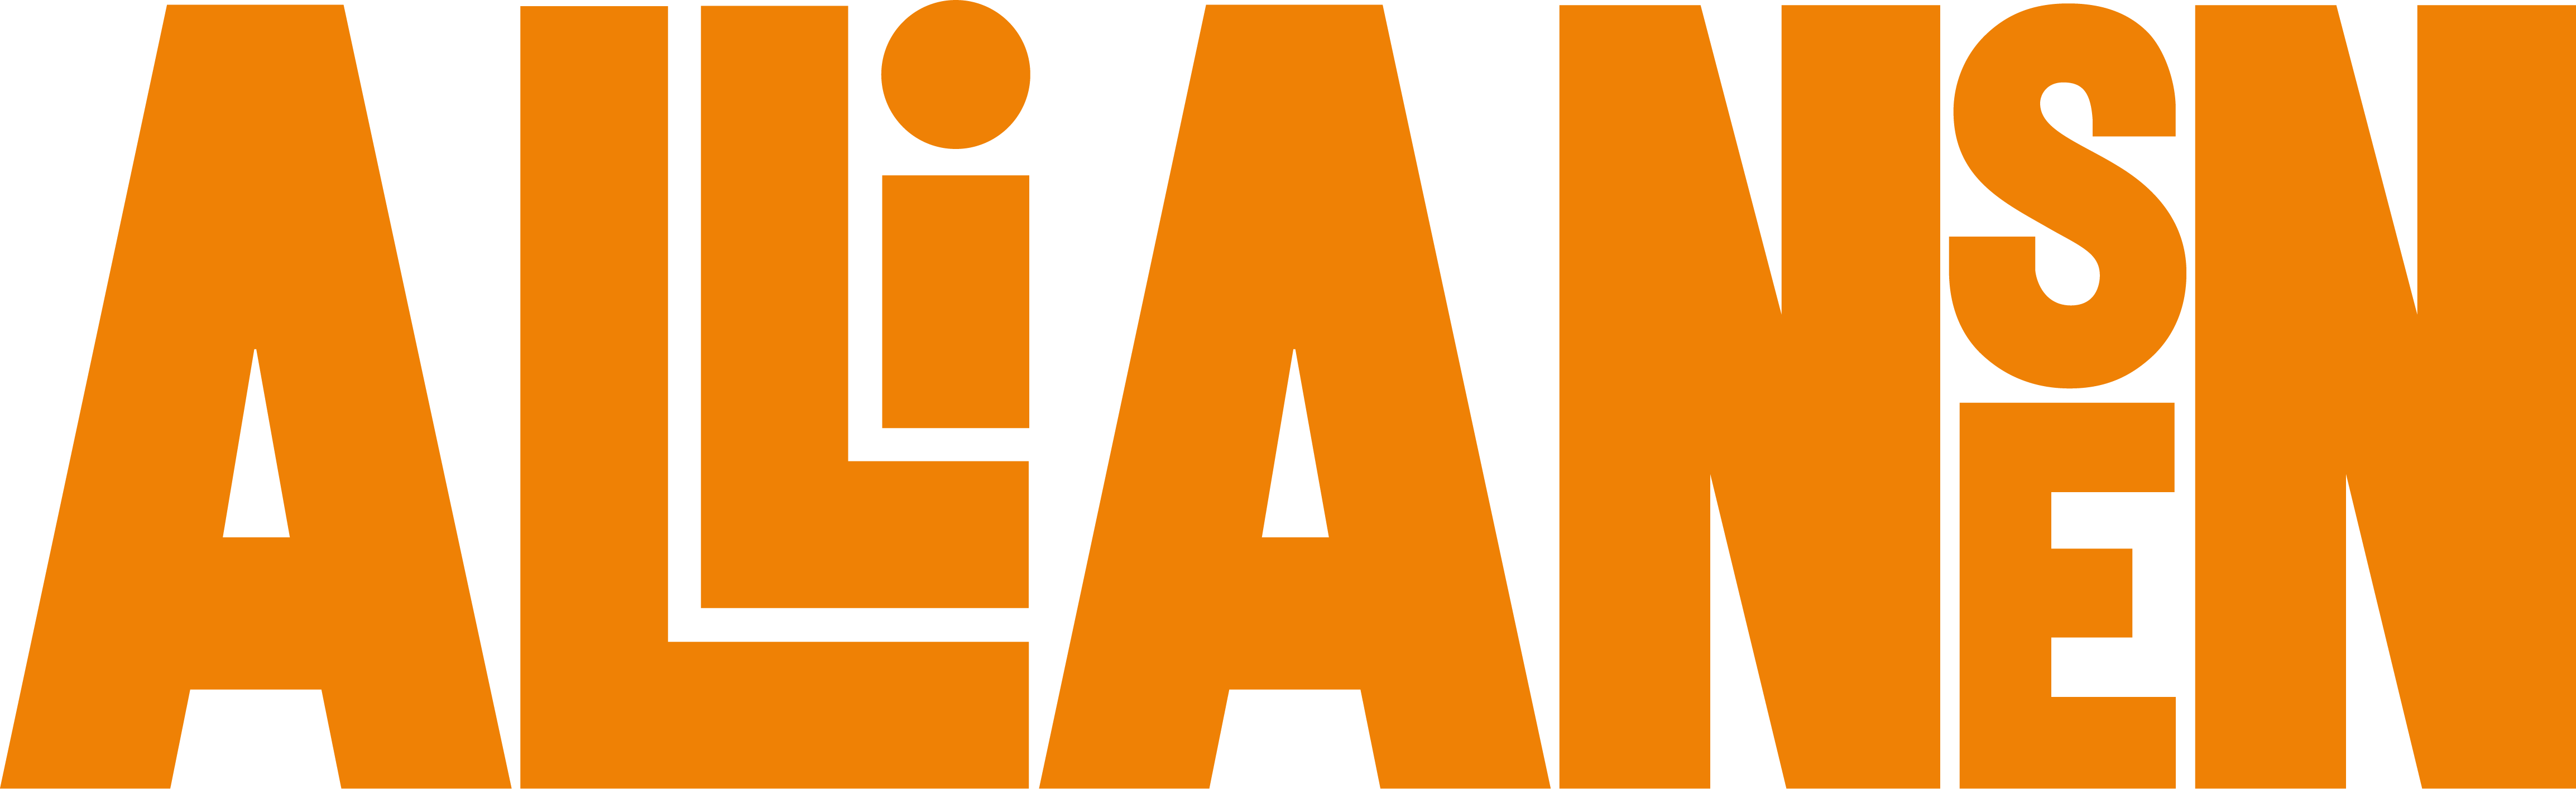 Alliansen logotyp